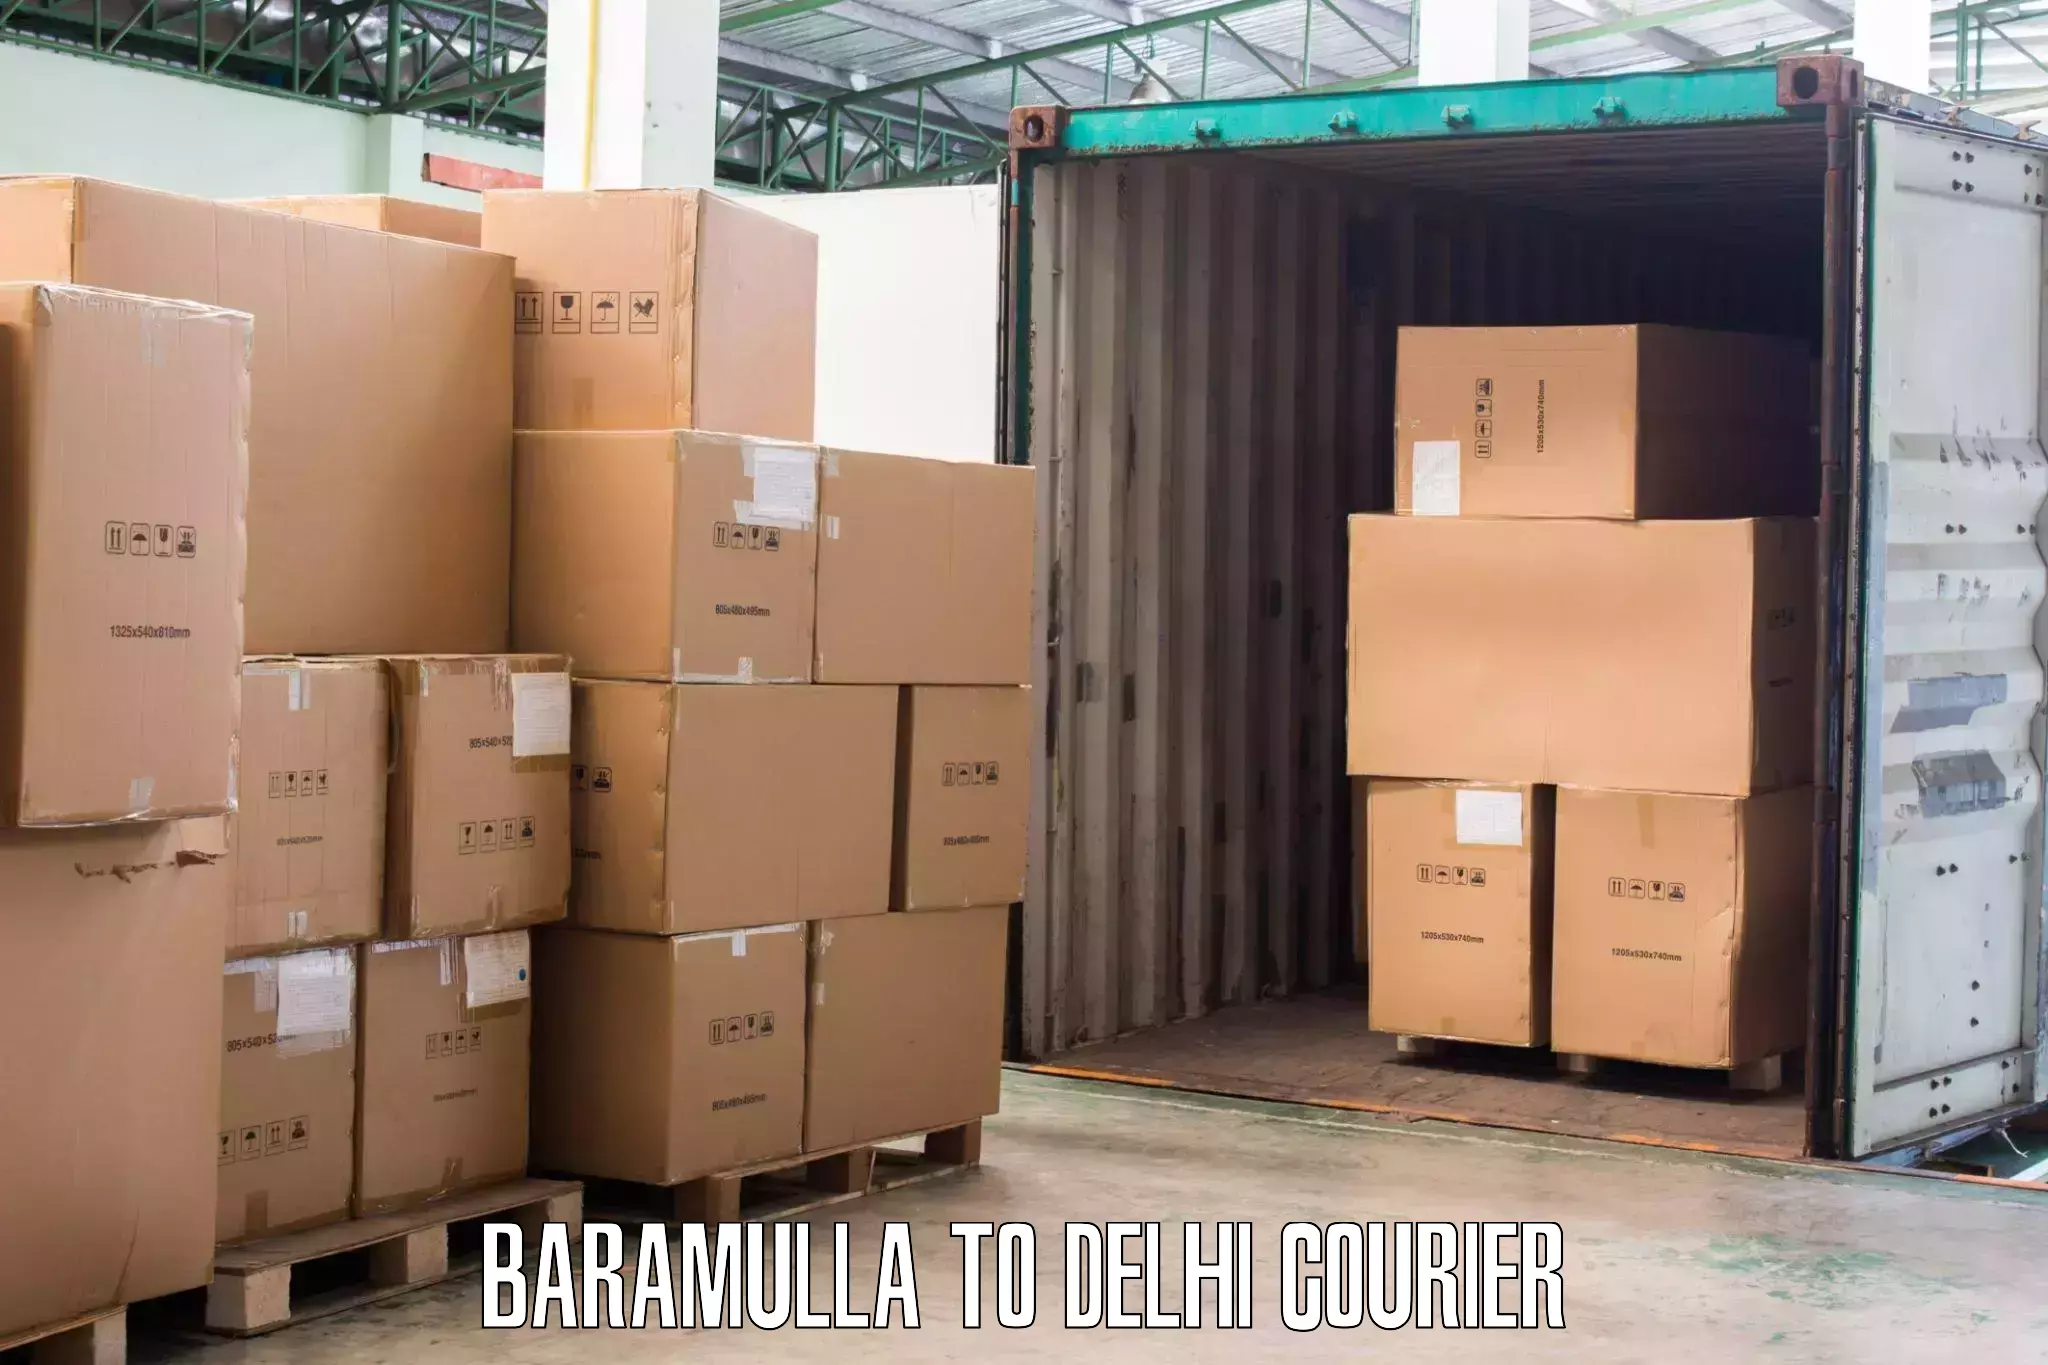 Professional relocation services Baramulla to Jamia Hamdard New Delhi